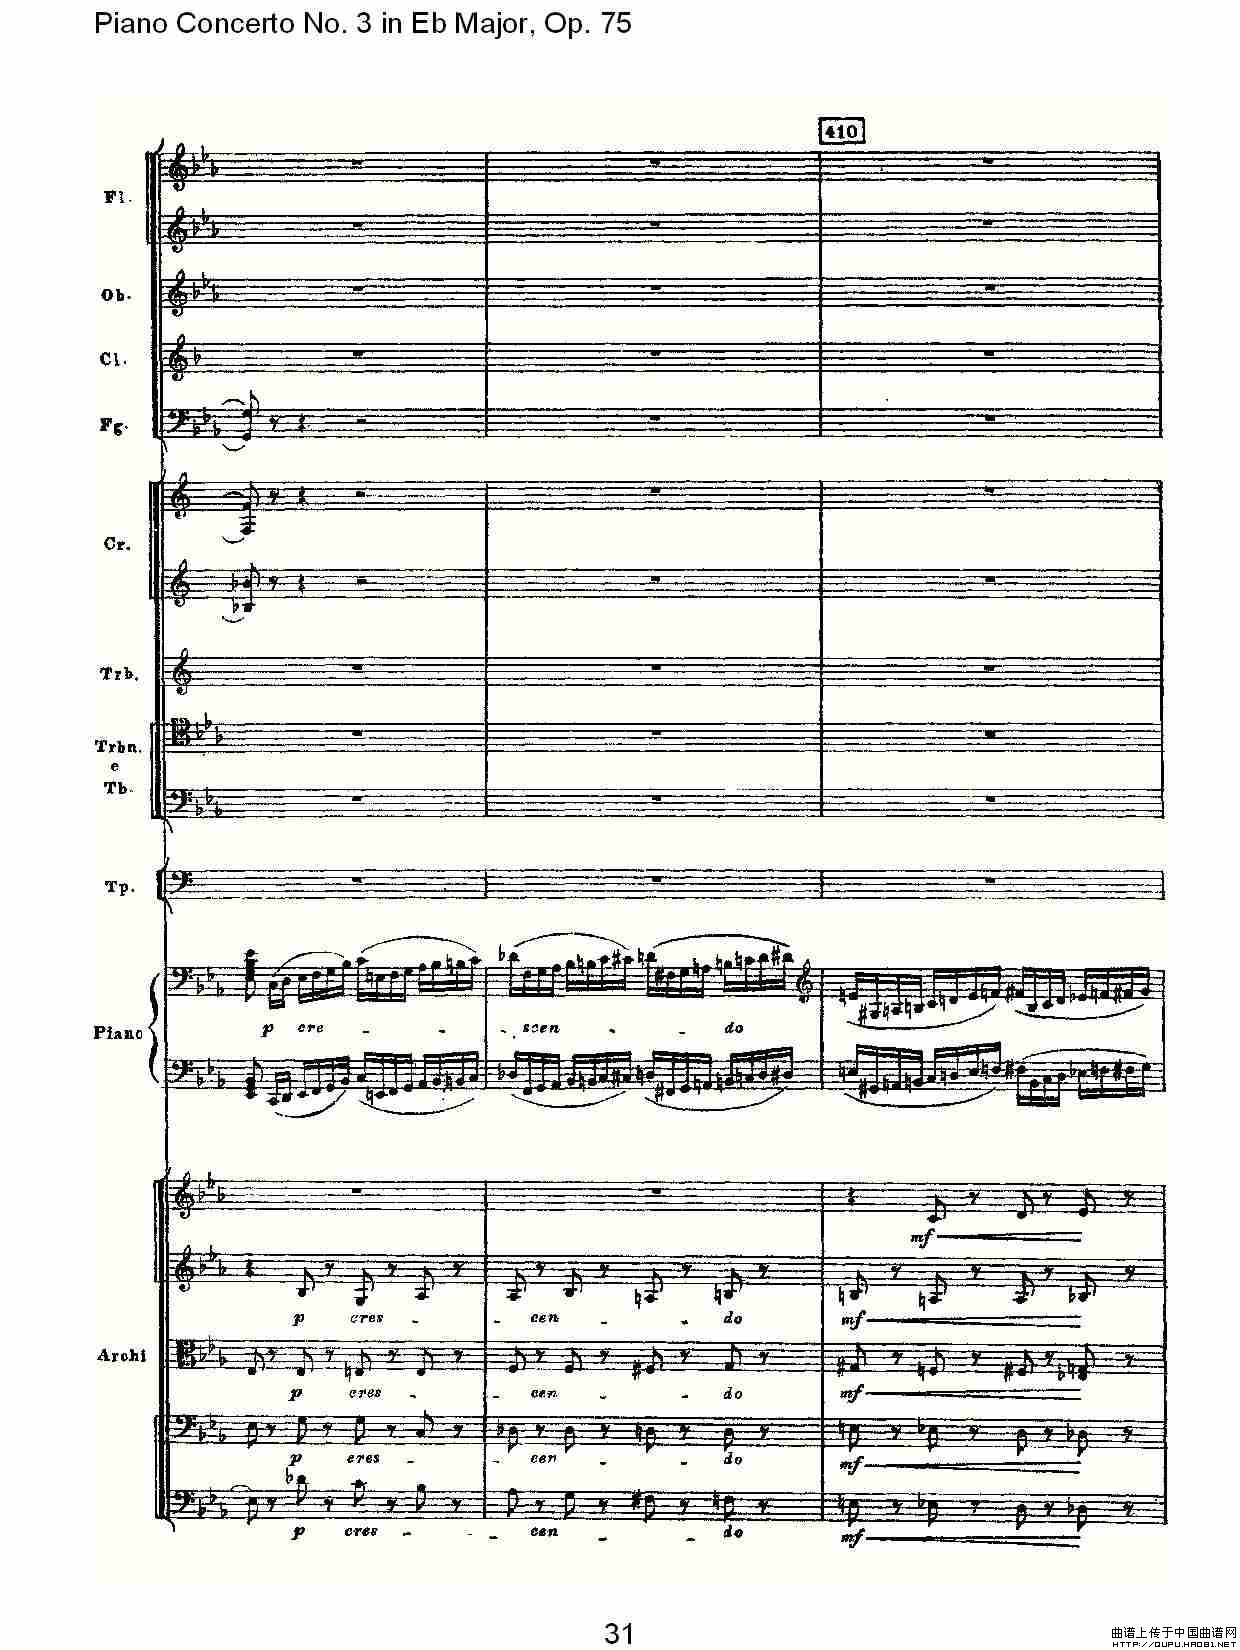 Piano Concerto No.3 in Eb Major, Op.75（Eb大调第三钢琴协奏）(1)_原文件名：Piano Concerto No.3 in Eb Major, Op.751.jpg